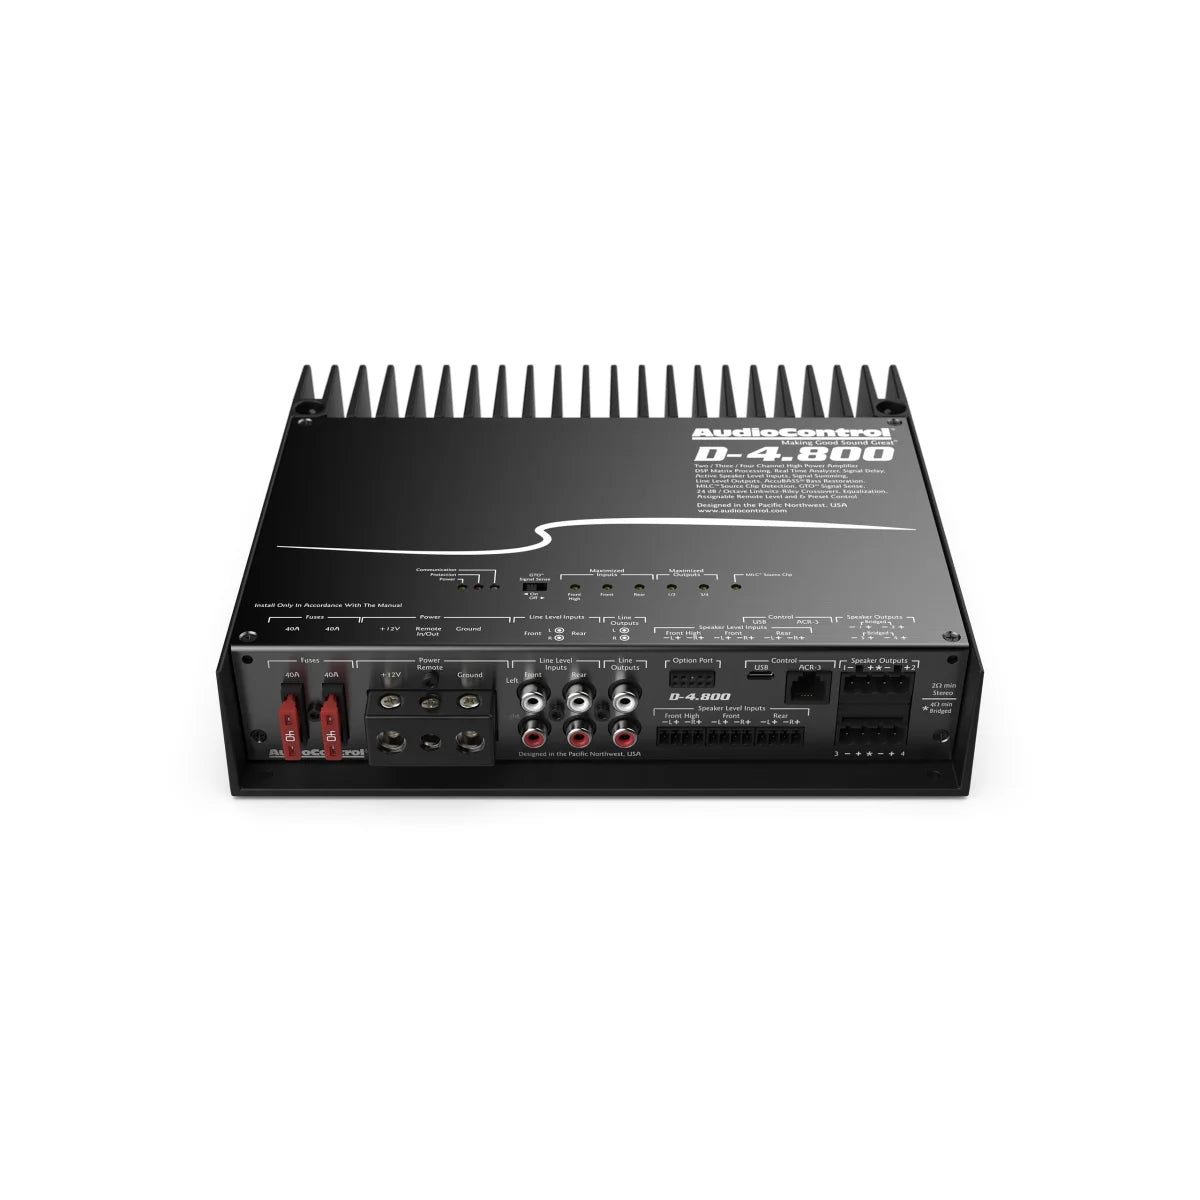 AUDIOCONTROL Audiocontrol D-4.8004-Kanal DSP-Verstärker 4-Kanal DSP-Verstärker